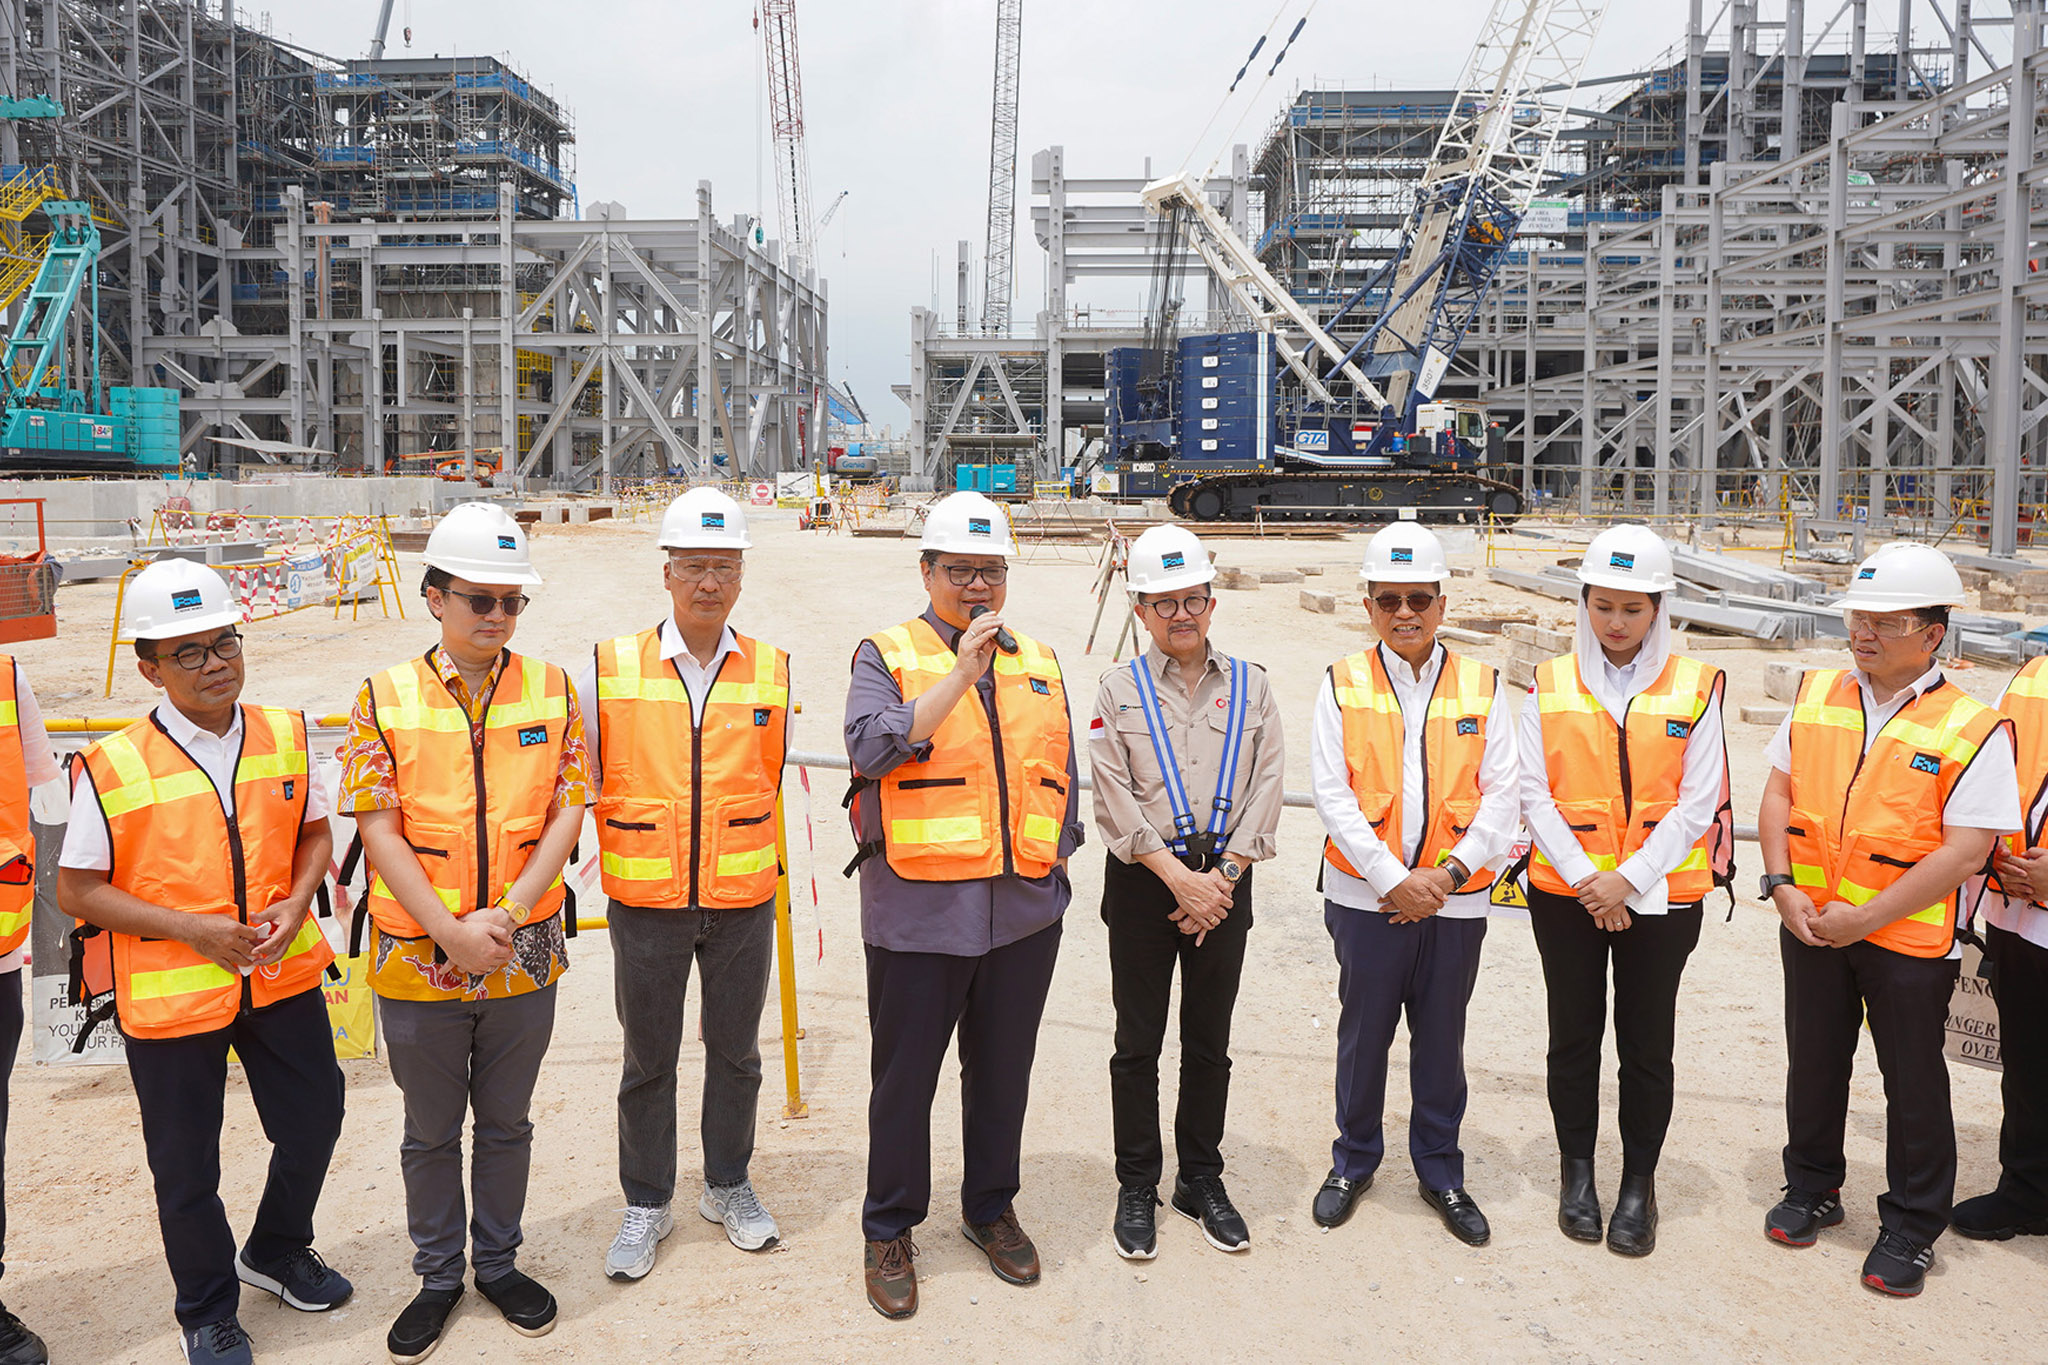 Menko Airlangga mengungkapkan bahwa perkembangan Manyar Smelter Project saat ini telah mencapai 51,7 persen sesuai dengan kurva-S yang telah disetujui pemerintah. Pemerintah optimistis bahwa konstruksi akan rampung tepat waktu pada Desember 2023.